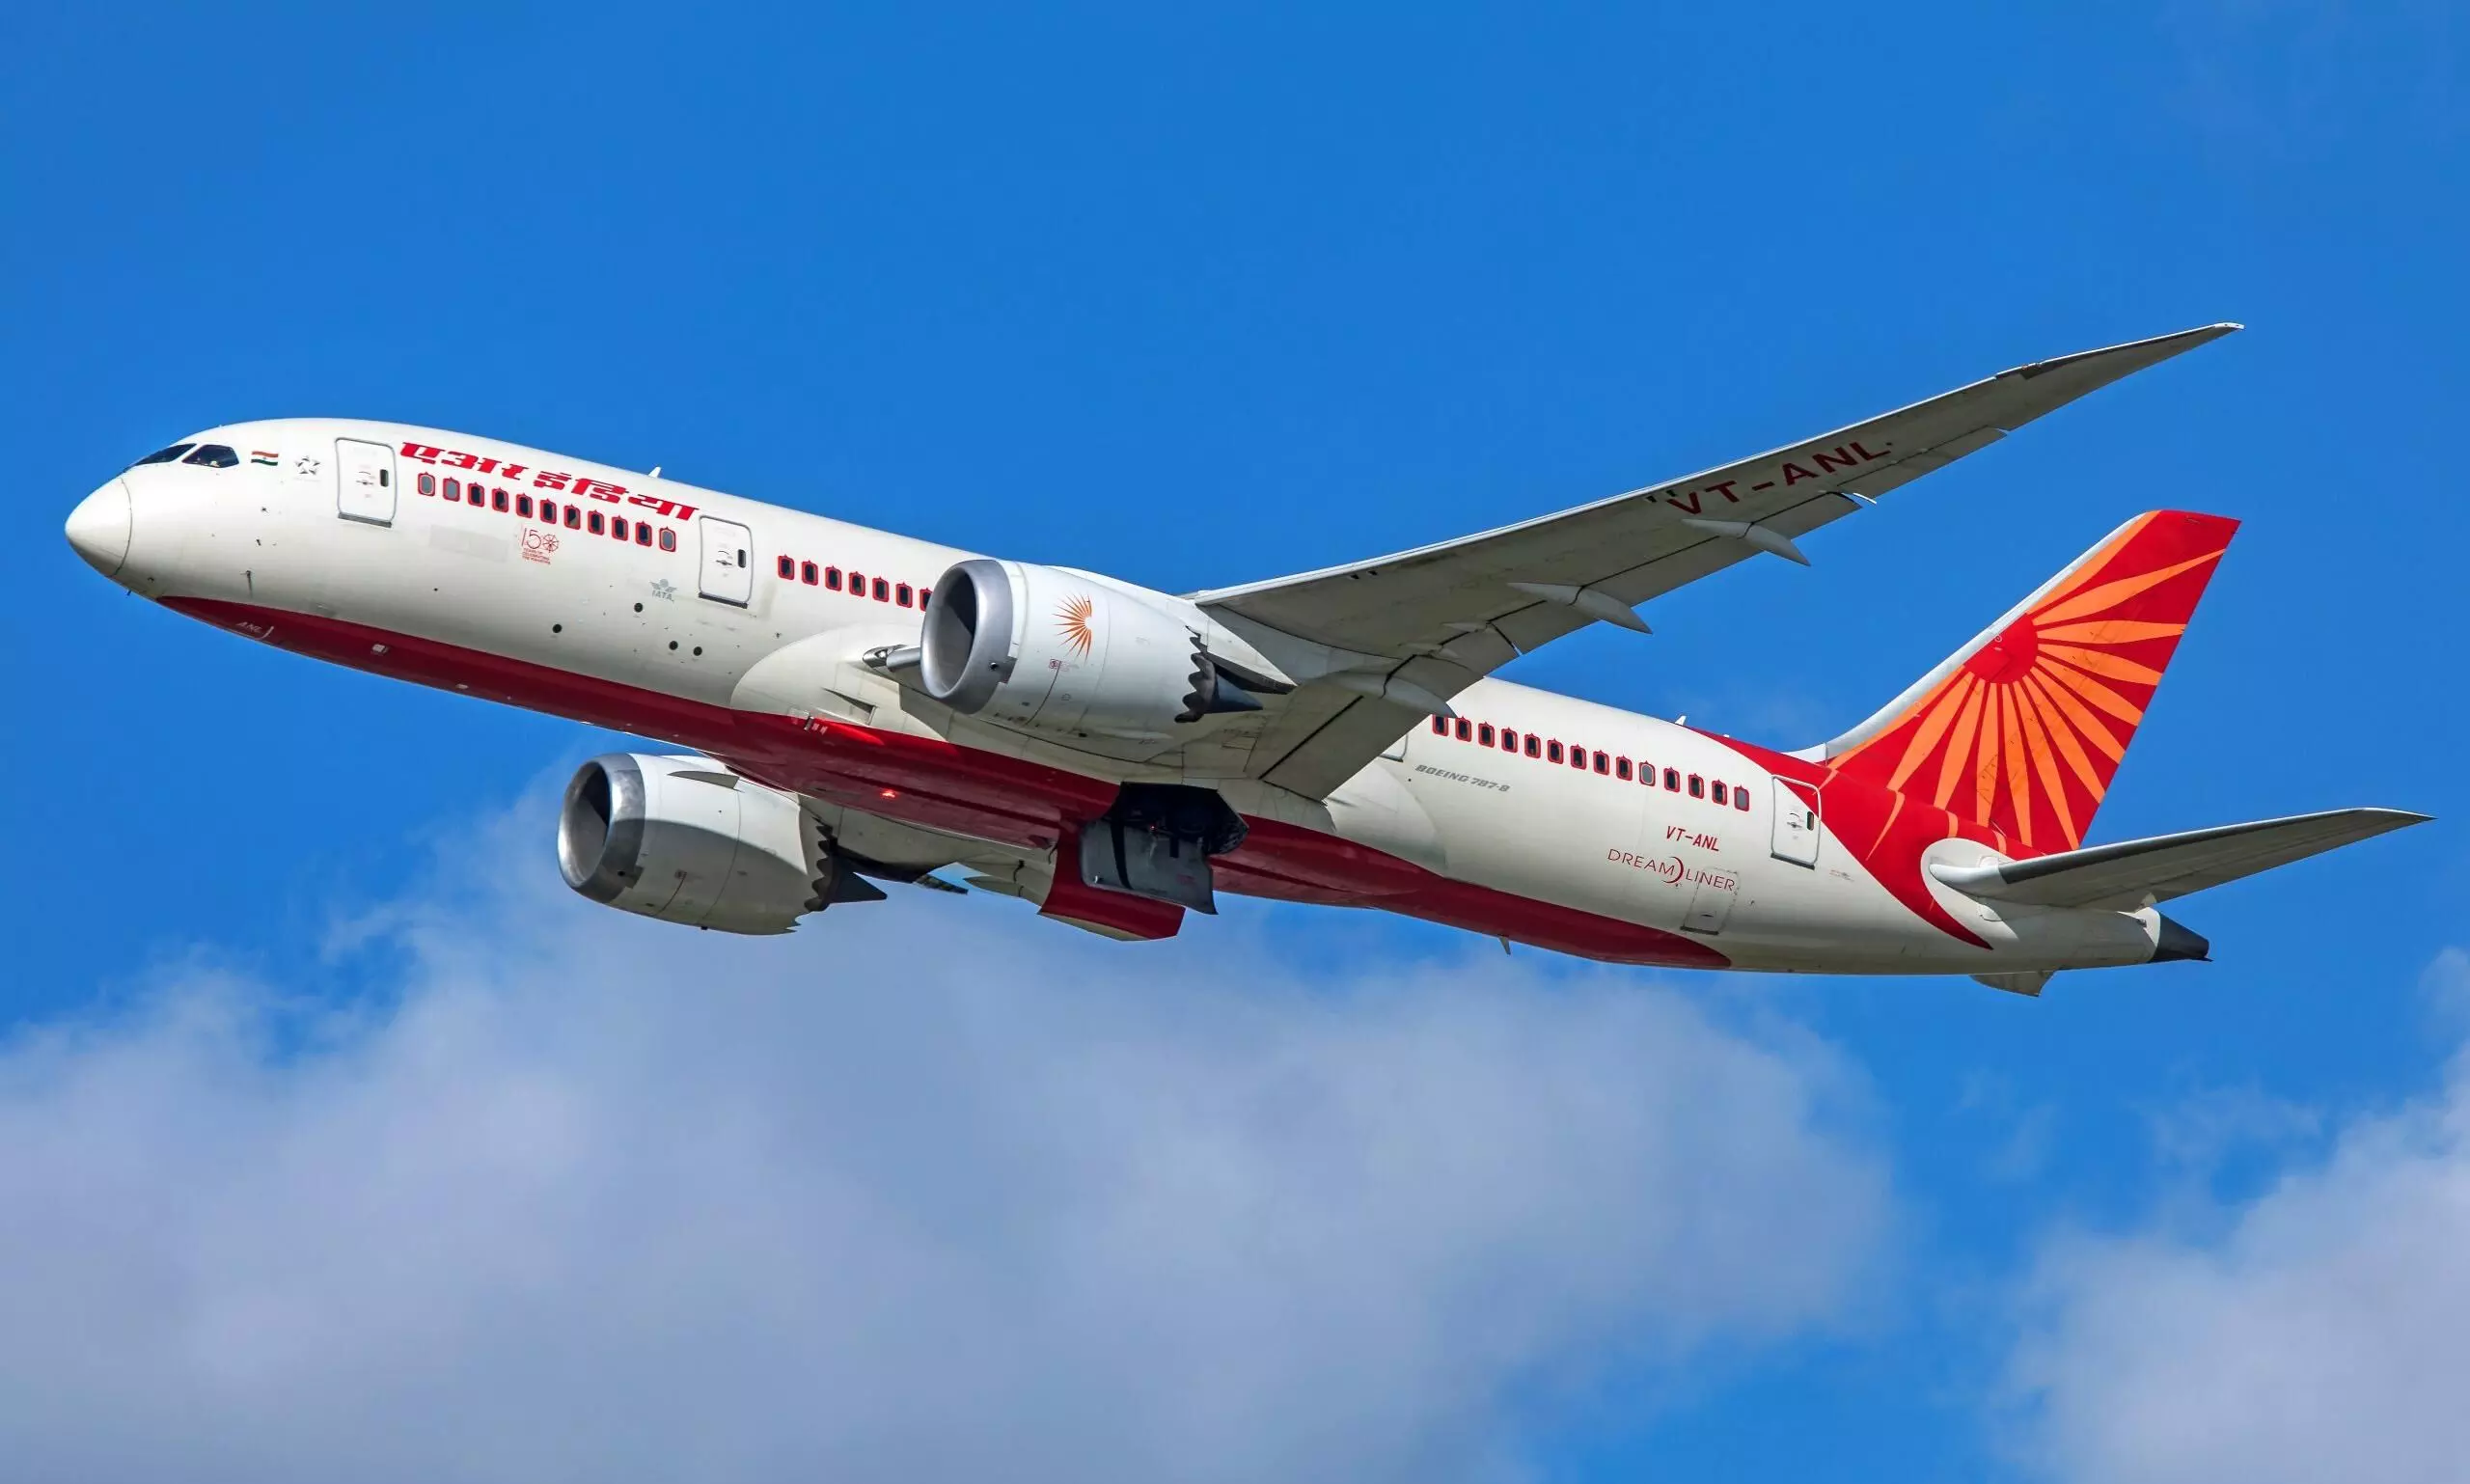 मेकओवर के बाद टाटा करेगी एयर इंडिया के लिए शॉपिंग, 150 नए बोईंग 737 विमान खरीदने का ऐलान